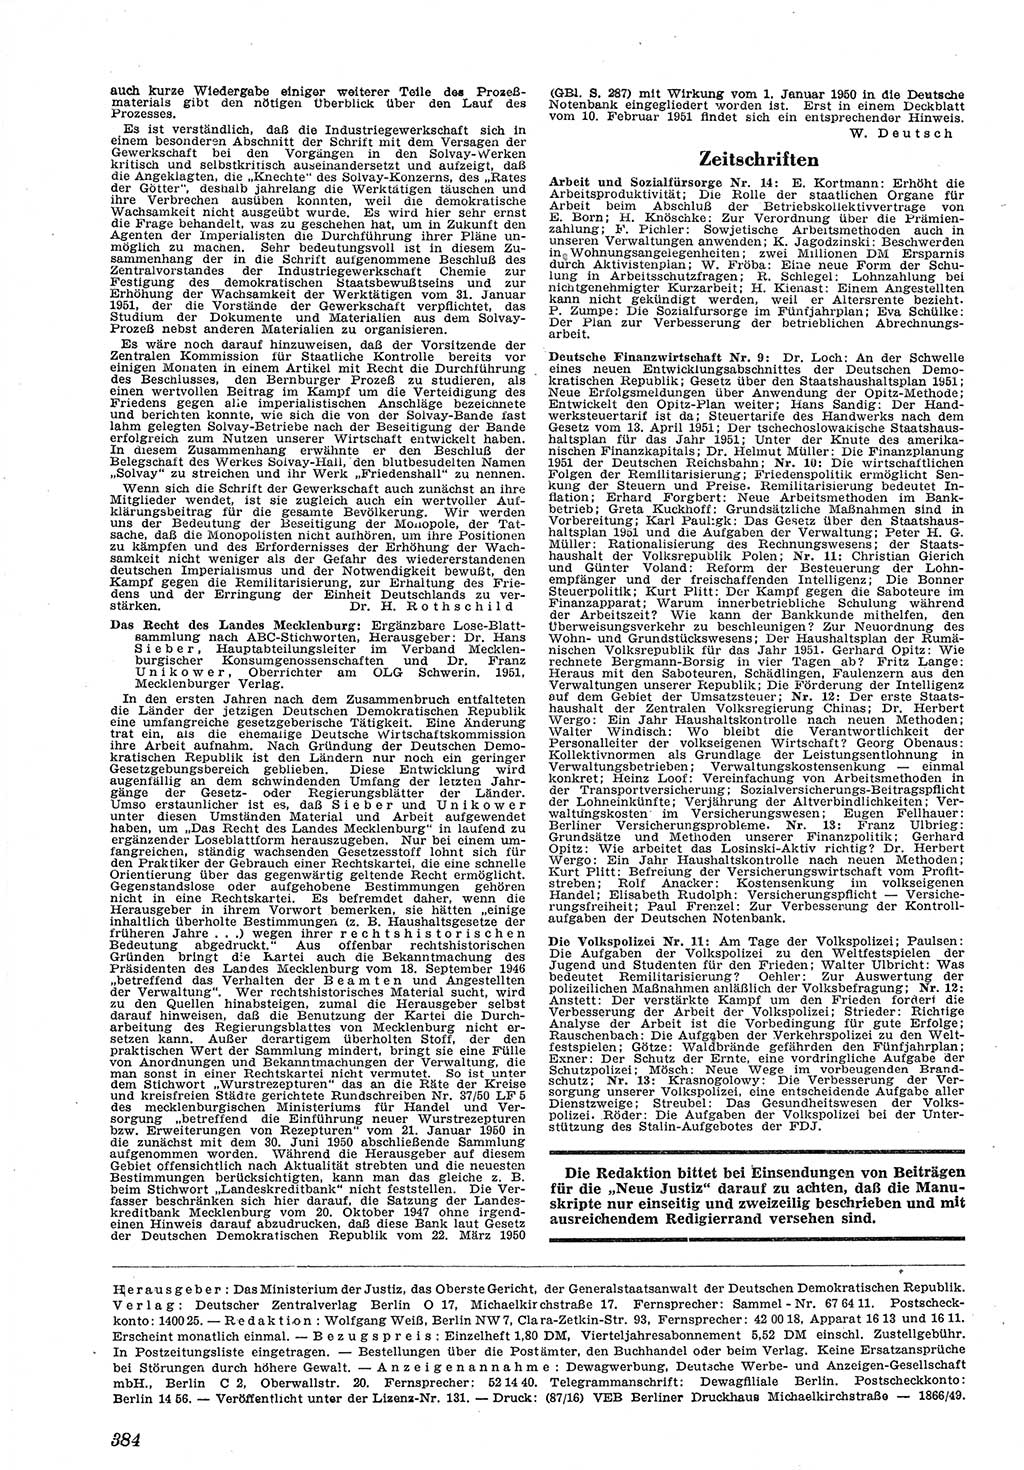 Neue Justiz (NJ), Zeitschrift für Recht und Rechtswissenschaft [Deutsche Demokratische Republik (DDR)], 5. Jahrgang 1951, Seite 384 (NJ DDR 1951, S. 384)